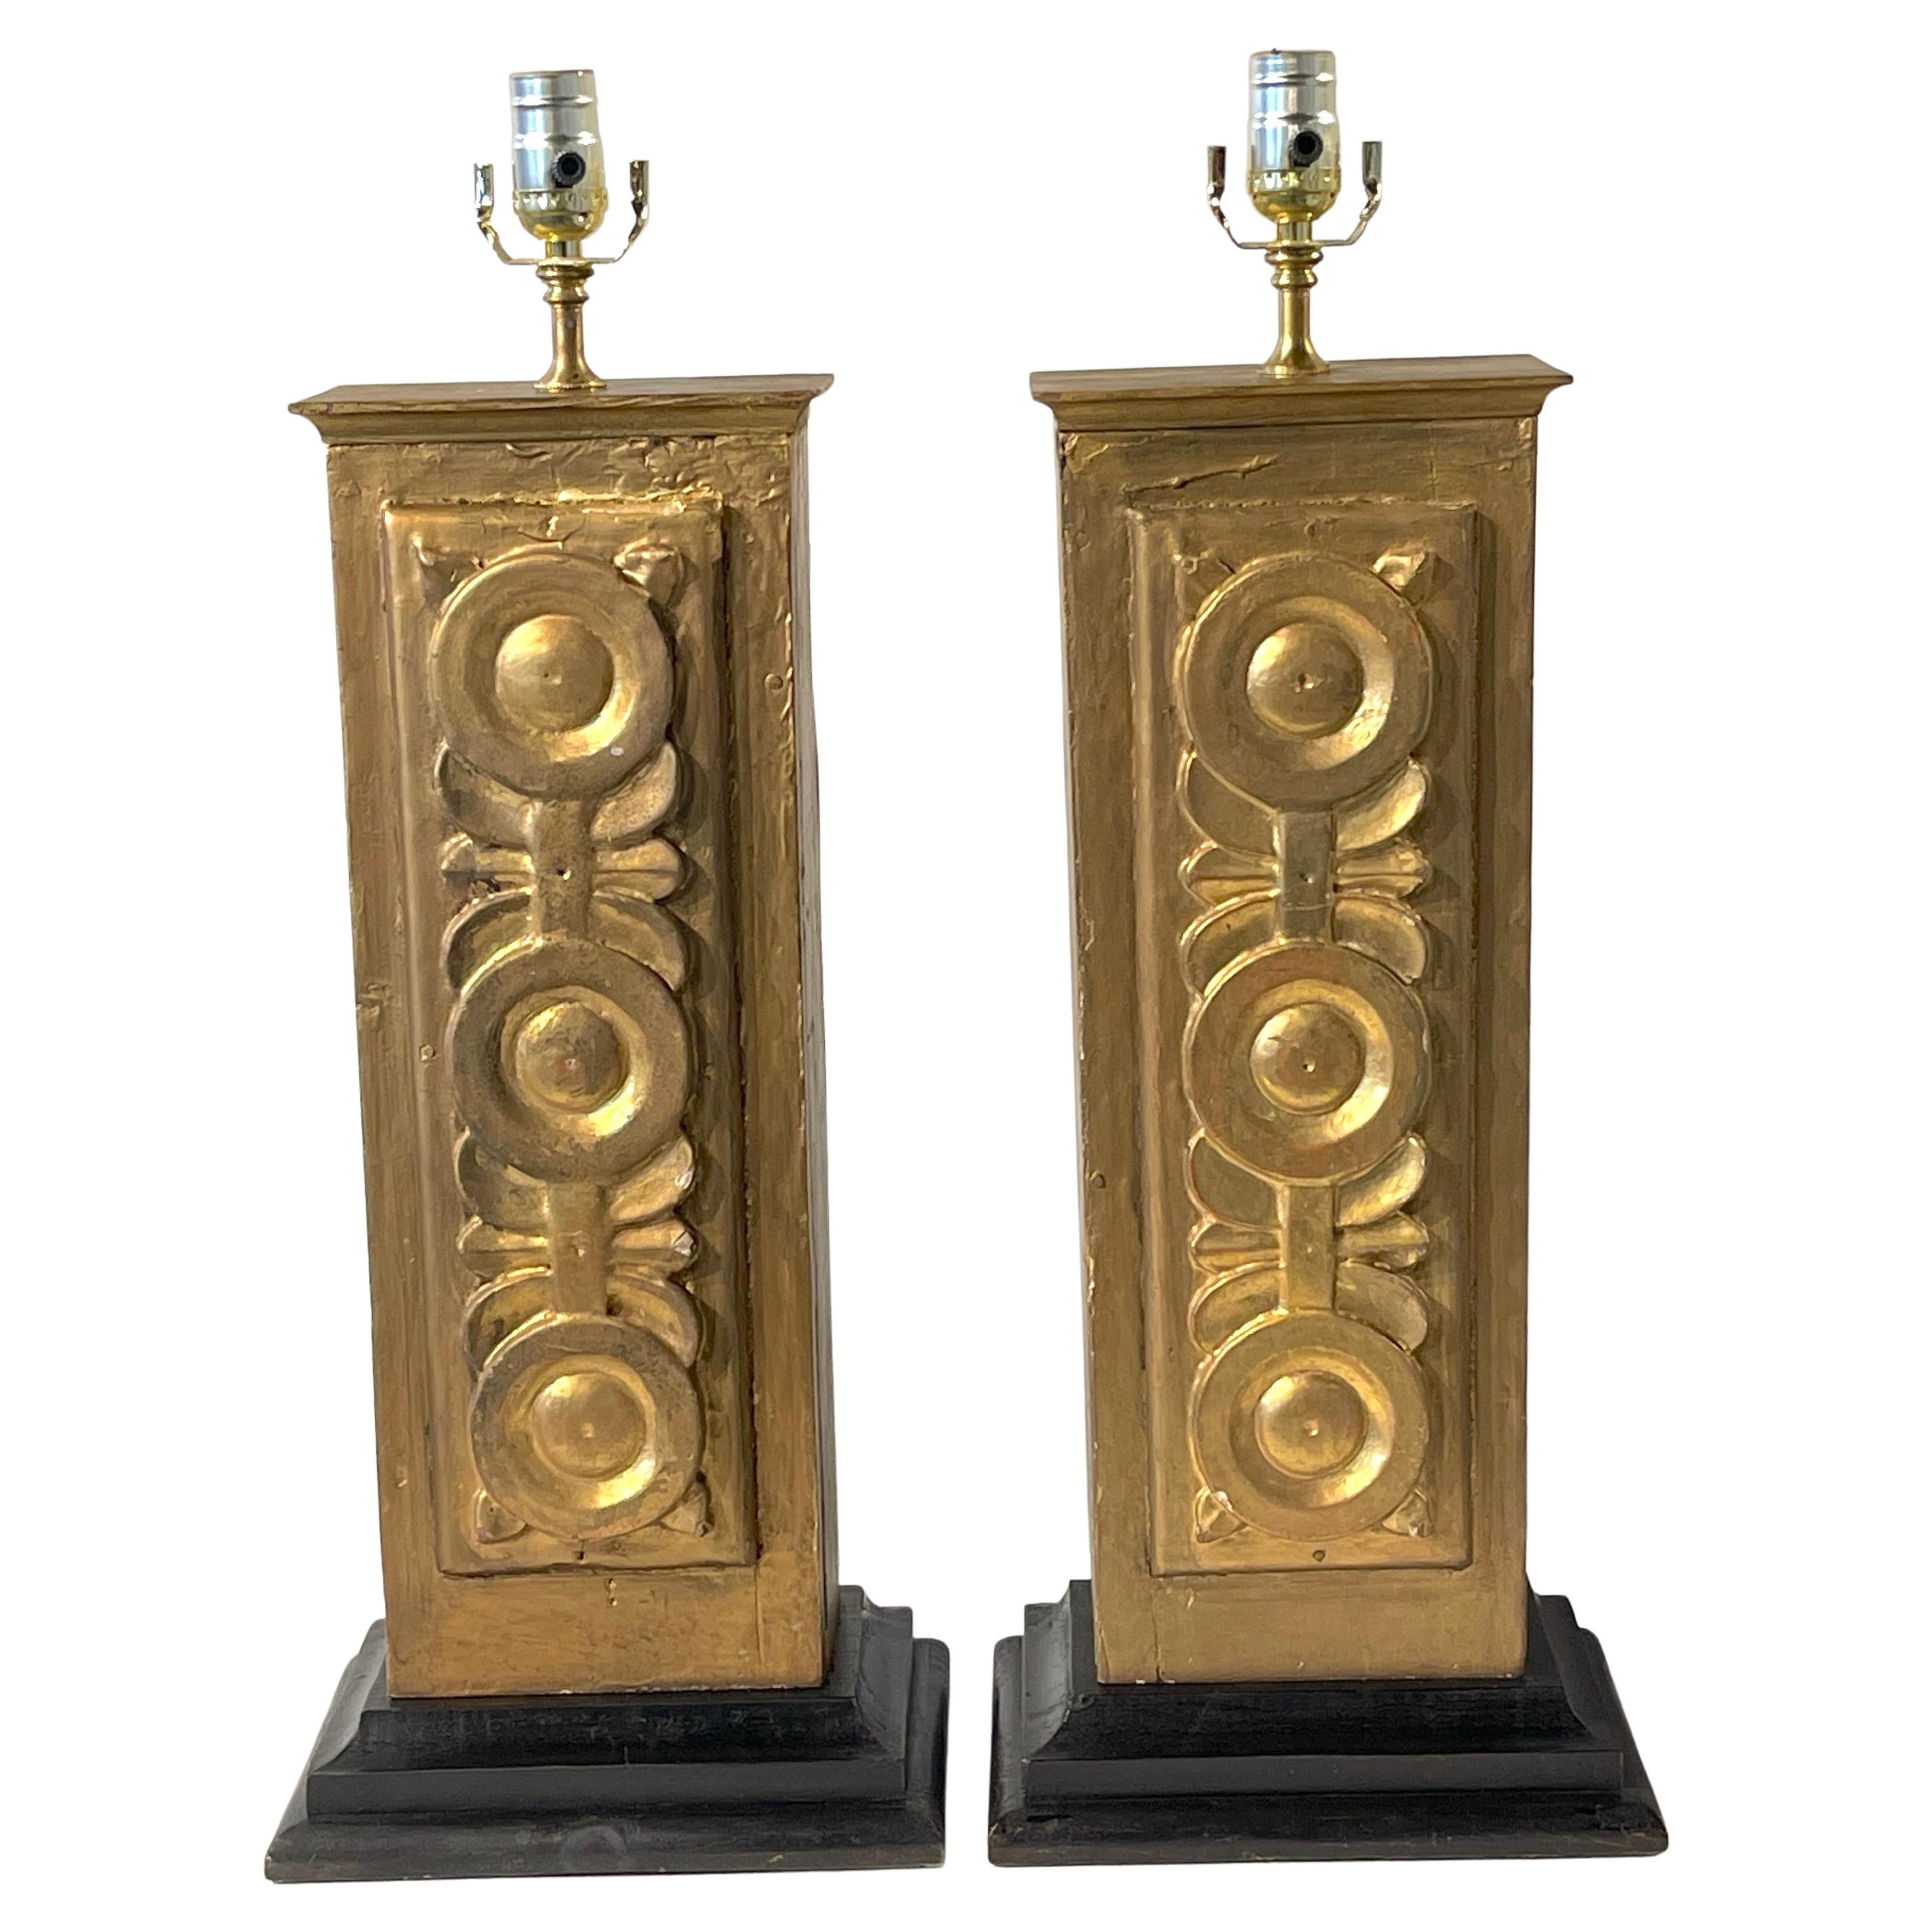 Paire de colonnes coloniales espagnoles en bois doré du XIXe siècle, transformées en lampes 